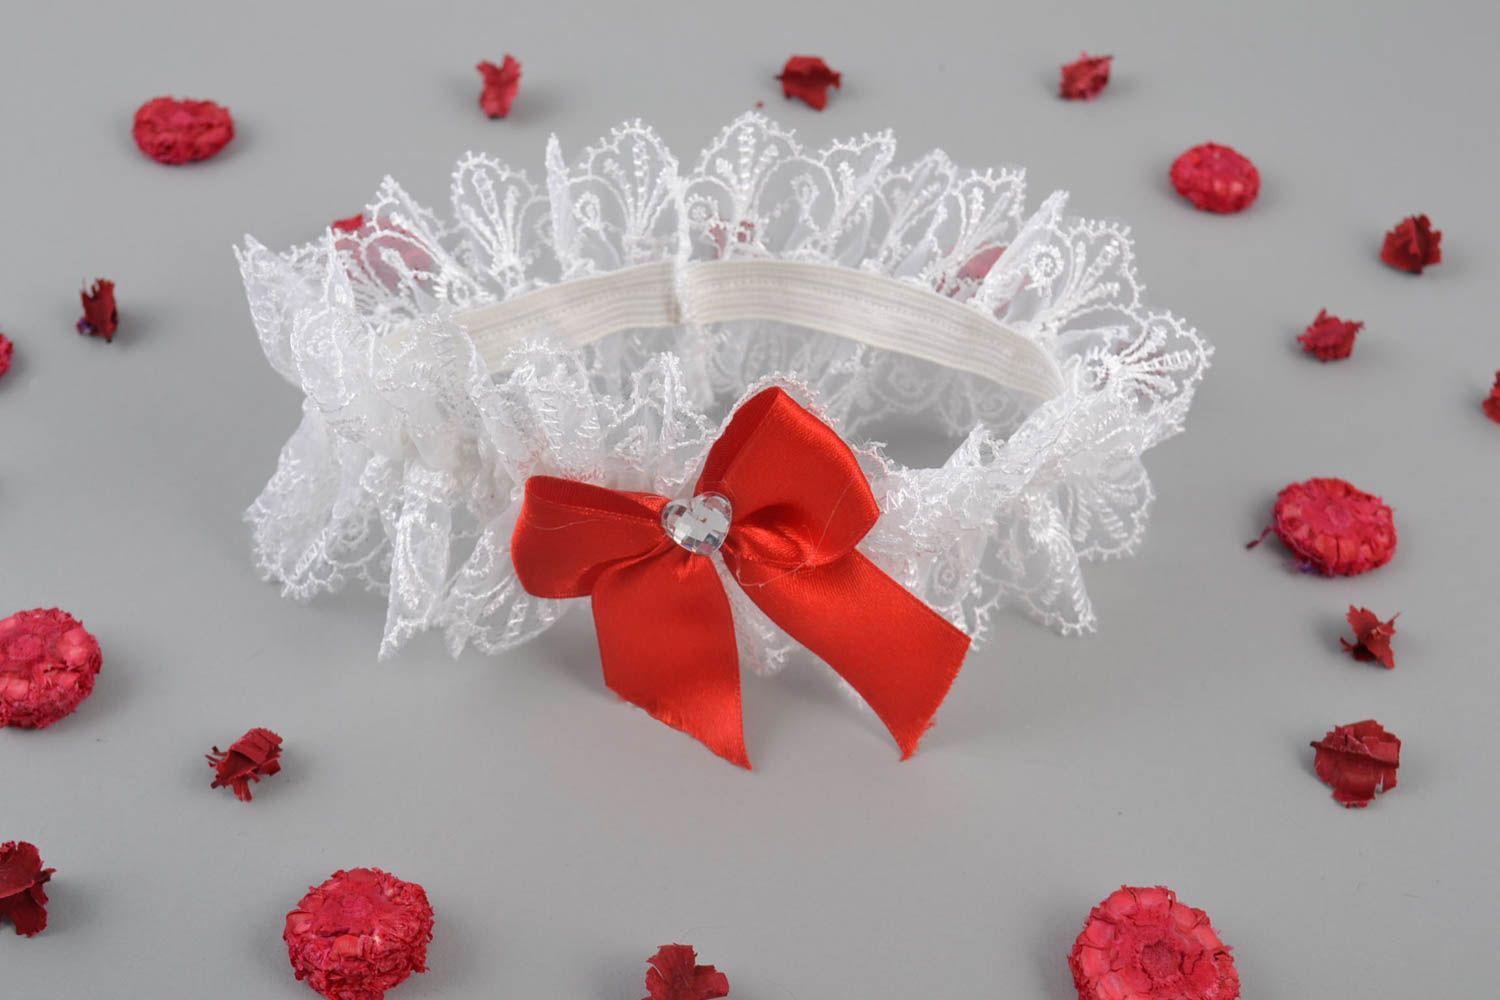 Свадебная подвязка невесты белая с красным бантом красивая гипюровая хэнд мейд фото 1